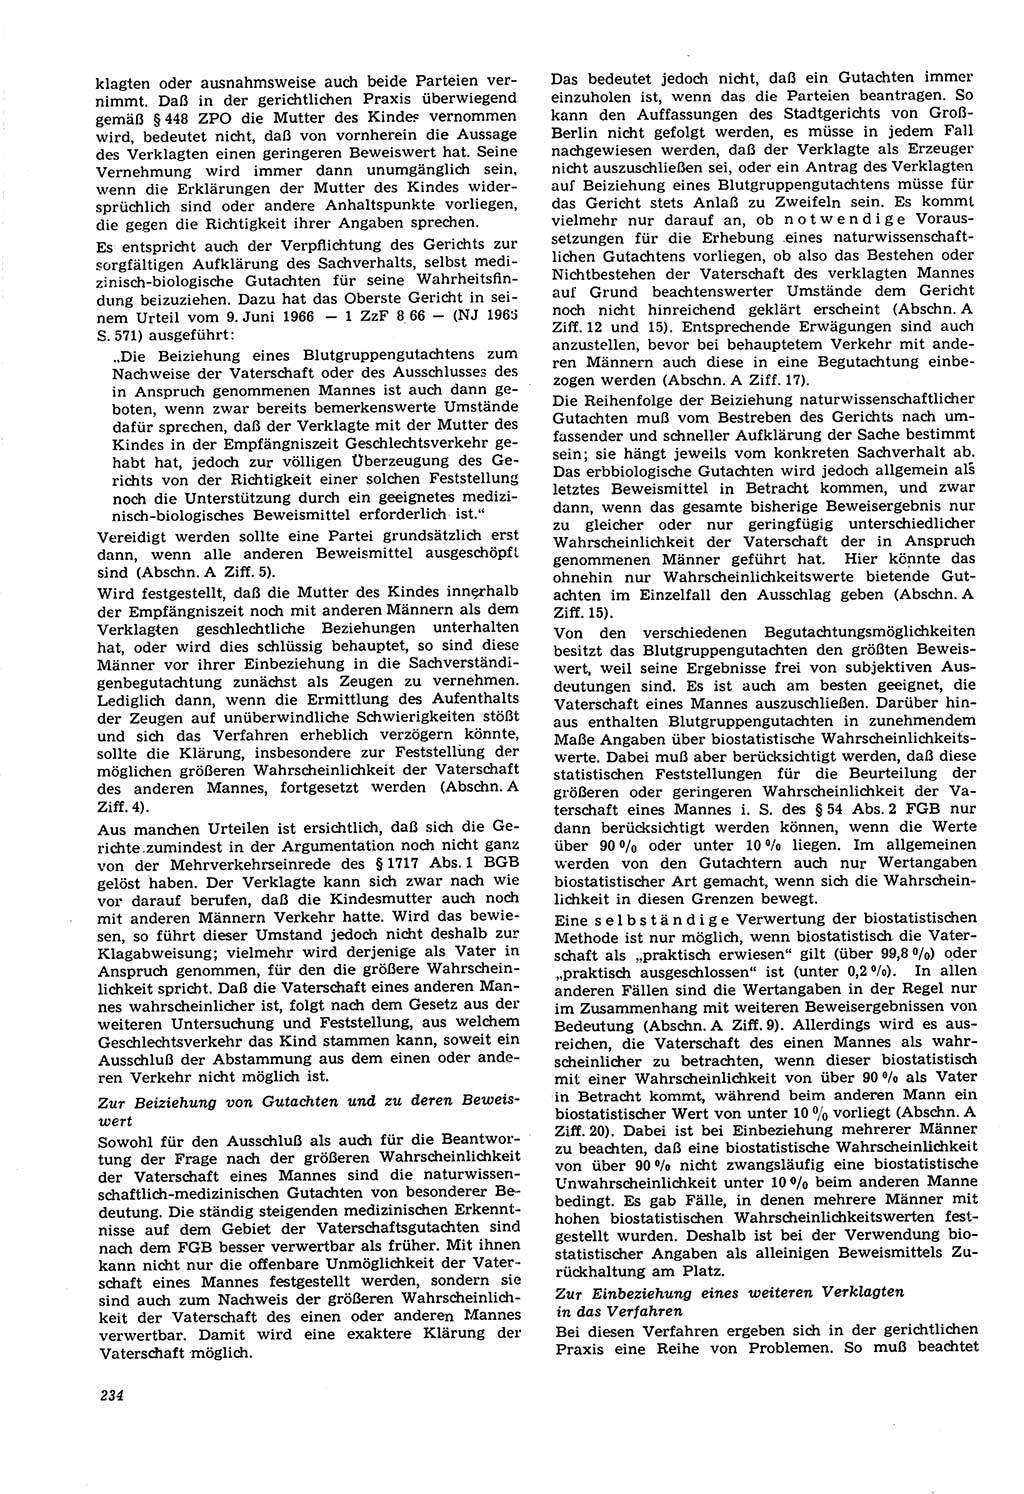 Neue Justiz (NJ), Zeitschrift für Recht und Rechtswissenschaft [Deutsche Demokratische Republik (DDR)], 21. Jahrgang 1967, Seite 234 (NJ DDR 1967, S. 234)